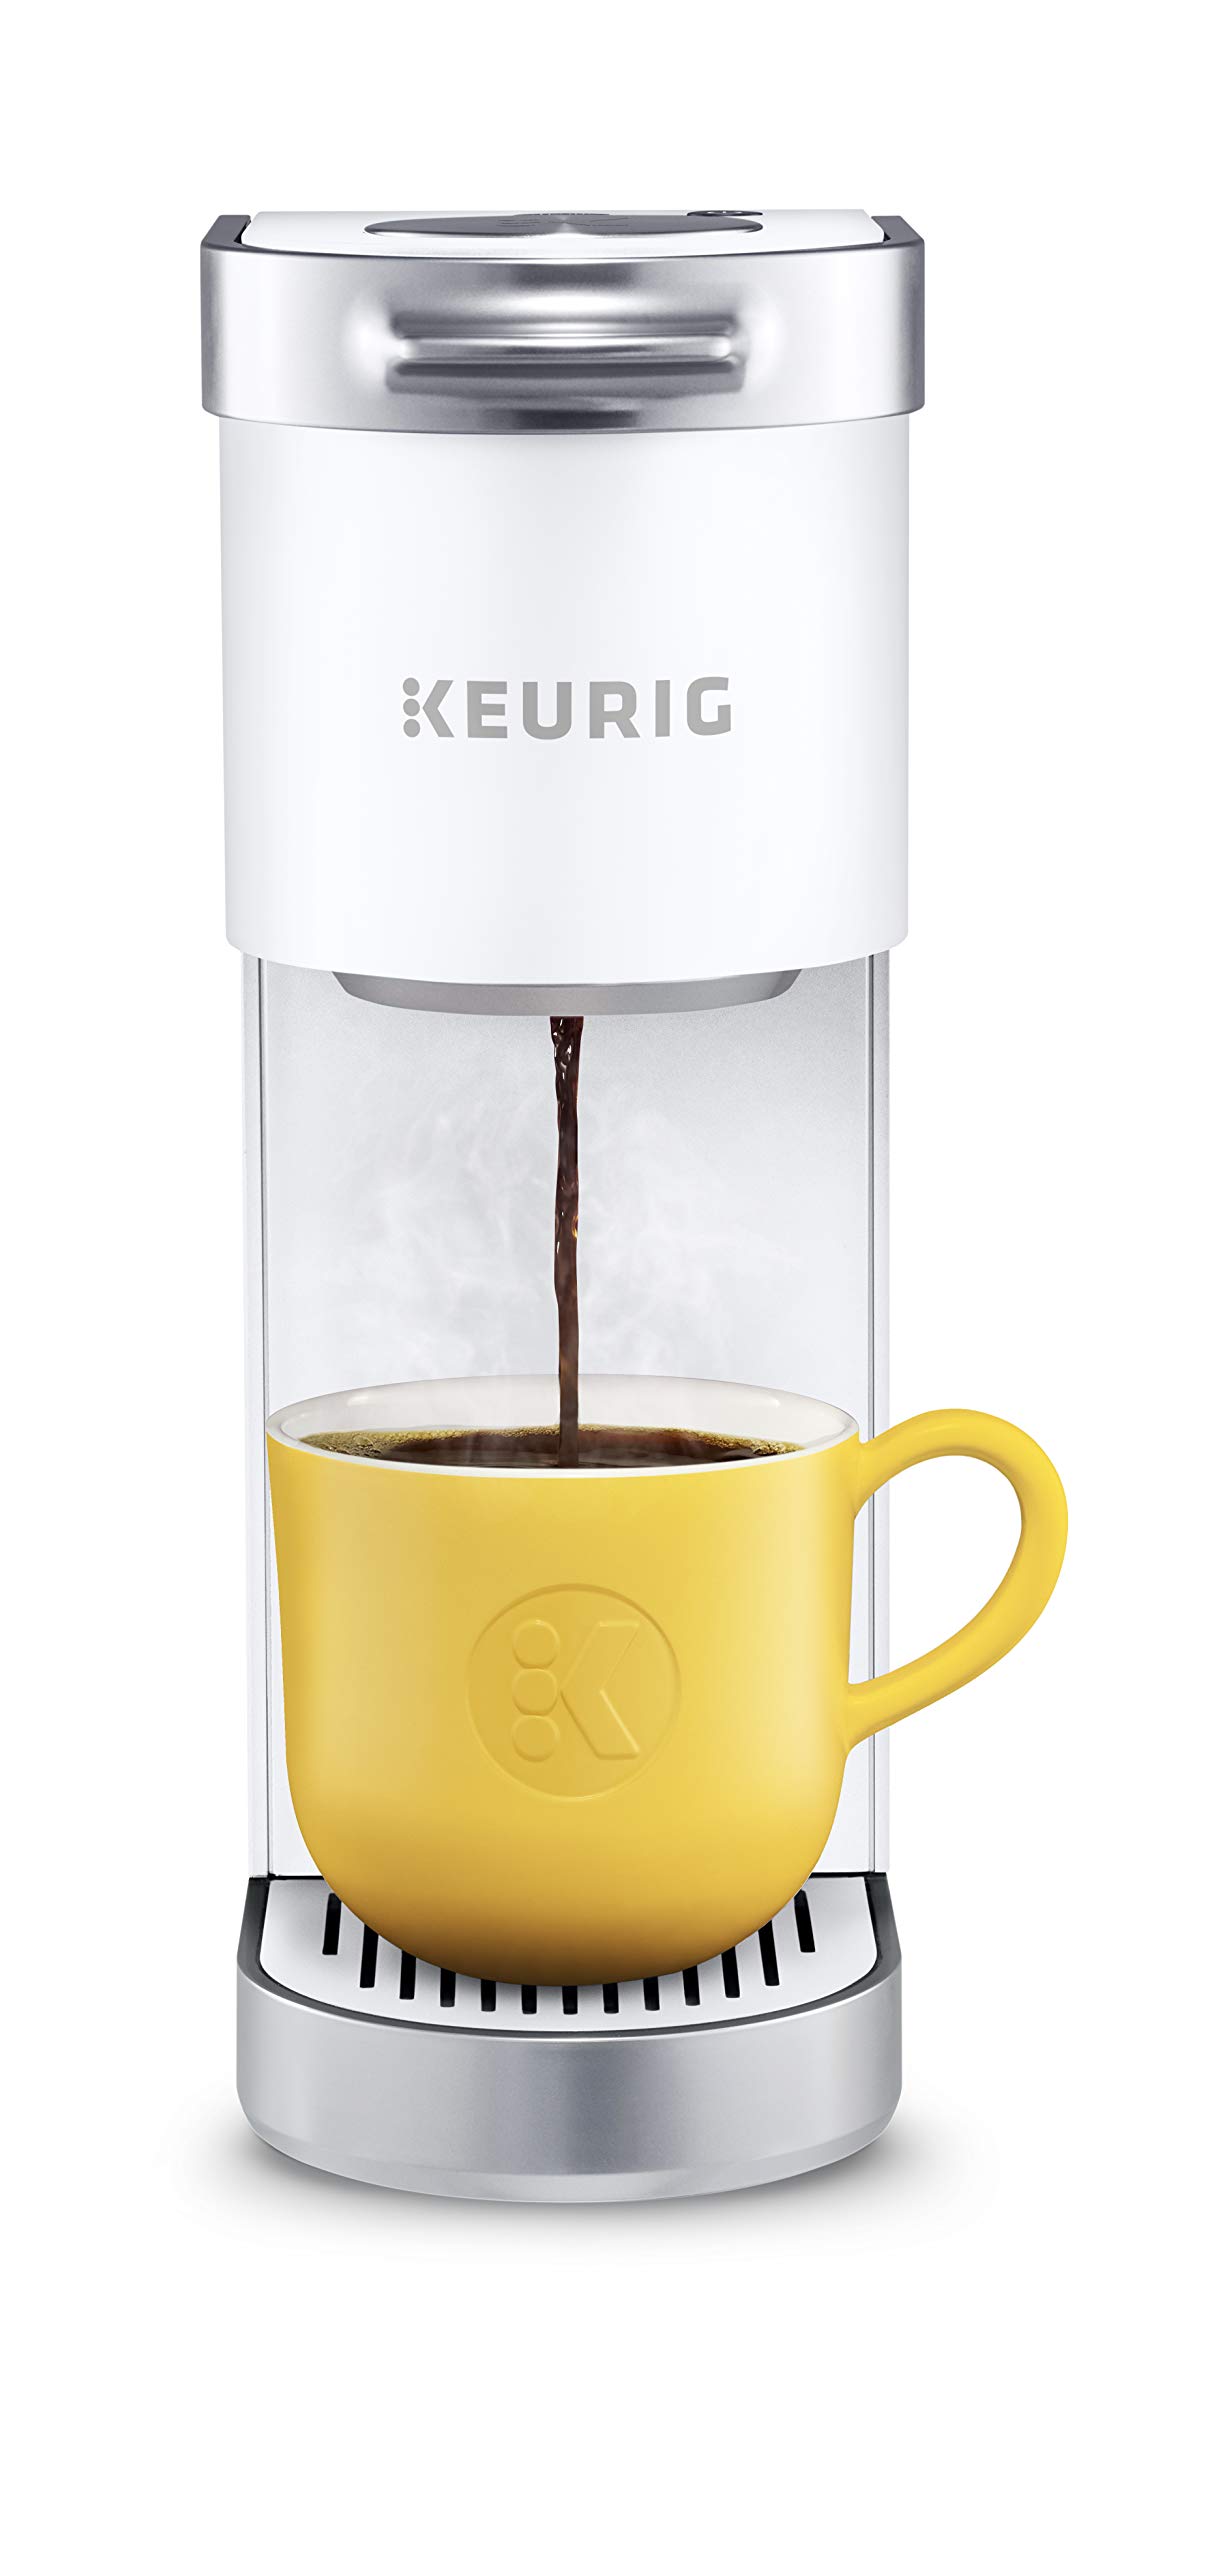 Keurig K-Mini Plus シングルサーブ K-カップ ポッドコーヒーメーカー、マットホワイト...